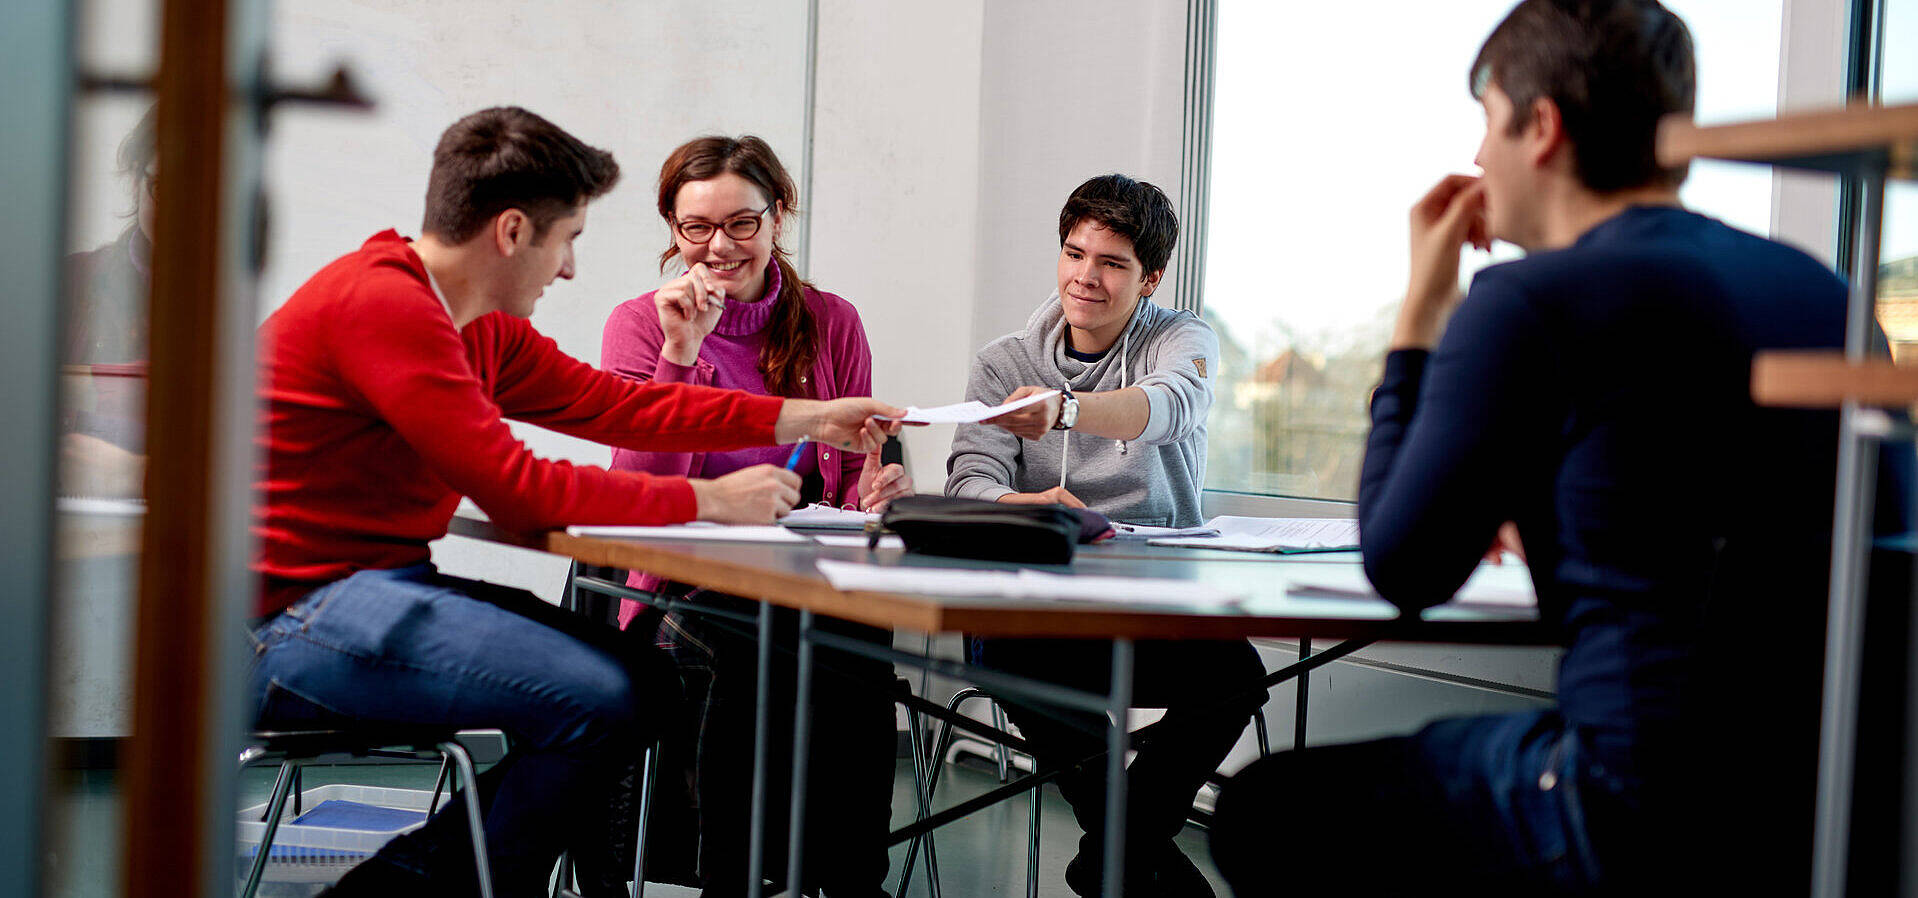 Studierende der Technischen Universität Berlin in einem Arbeitsraum arbeitend, als Gruppe an einem Tisch sitzend und sich austauschend